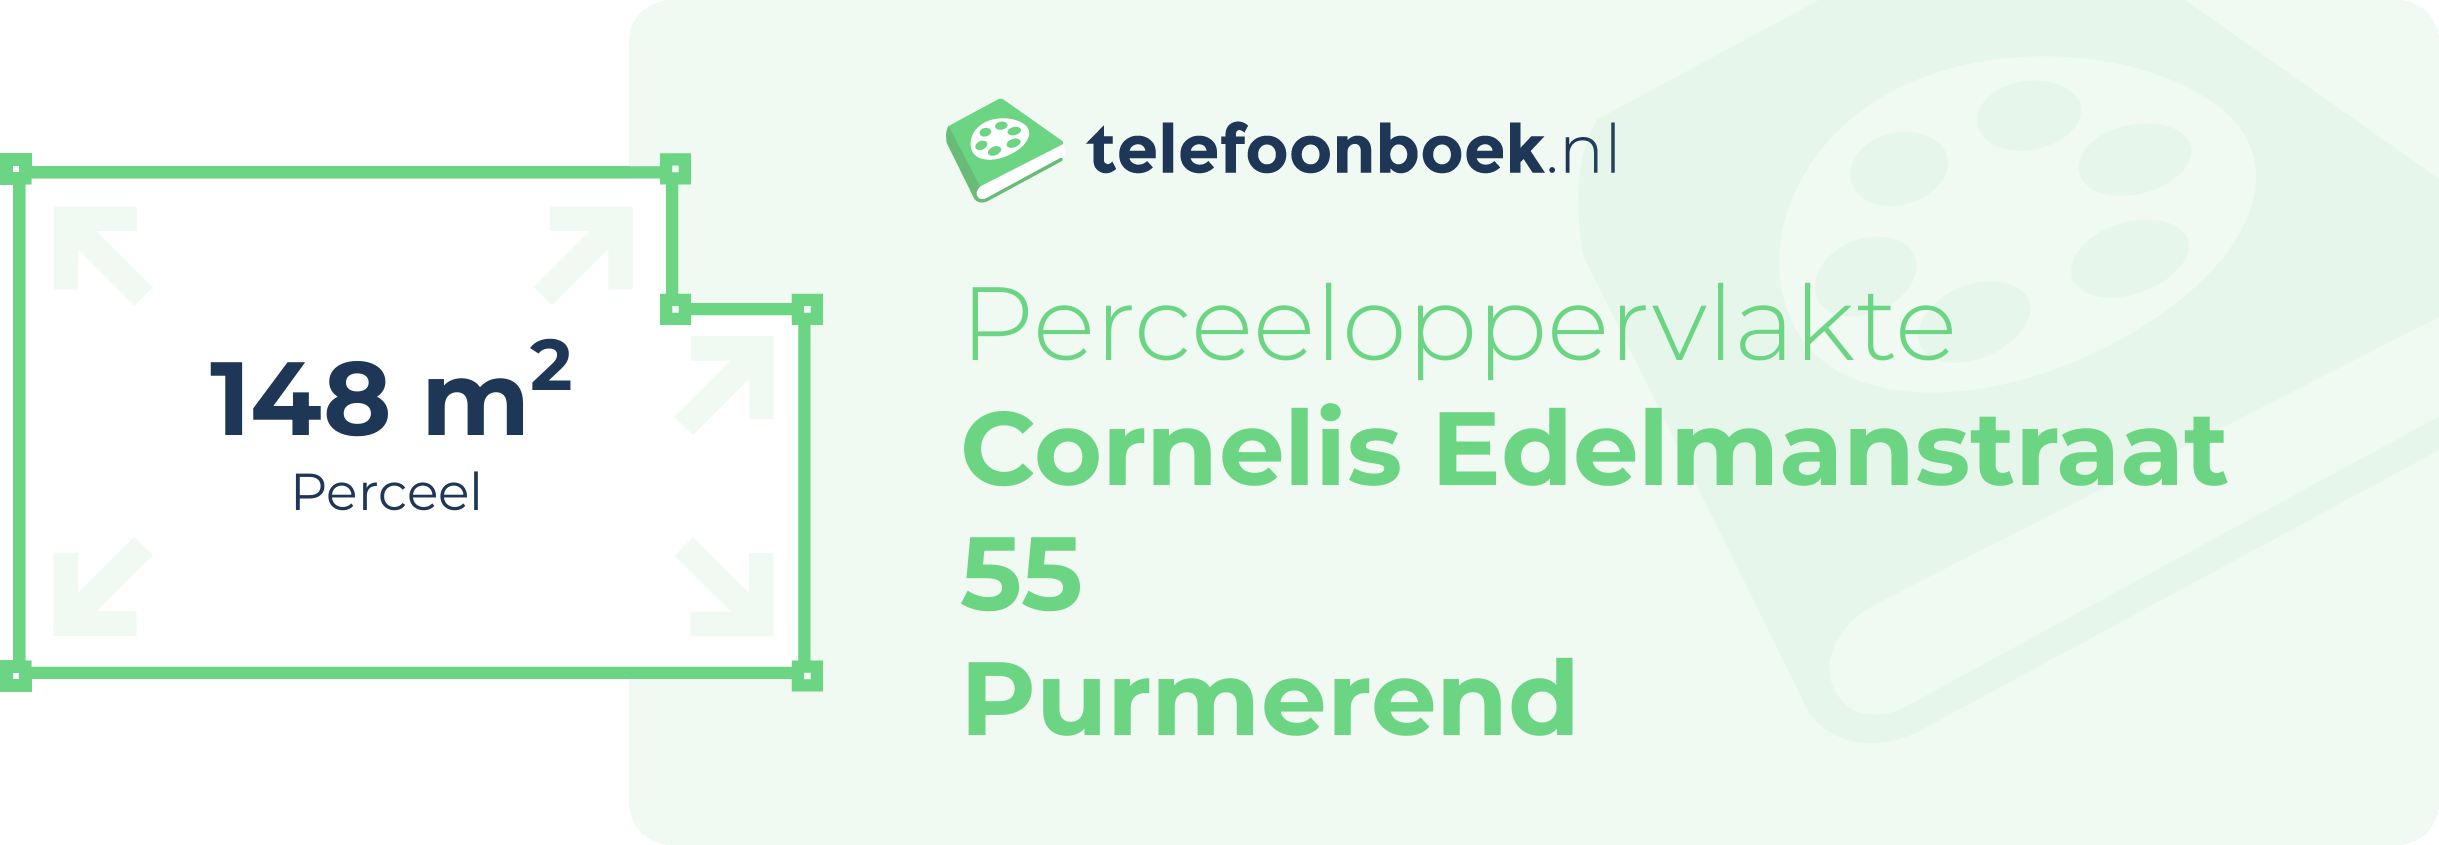 Perceeloppervlakte Cornelis Edelmanstraat 55 Purmerend